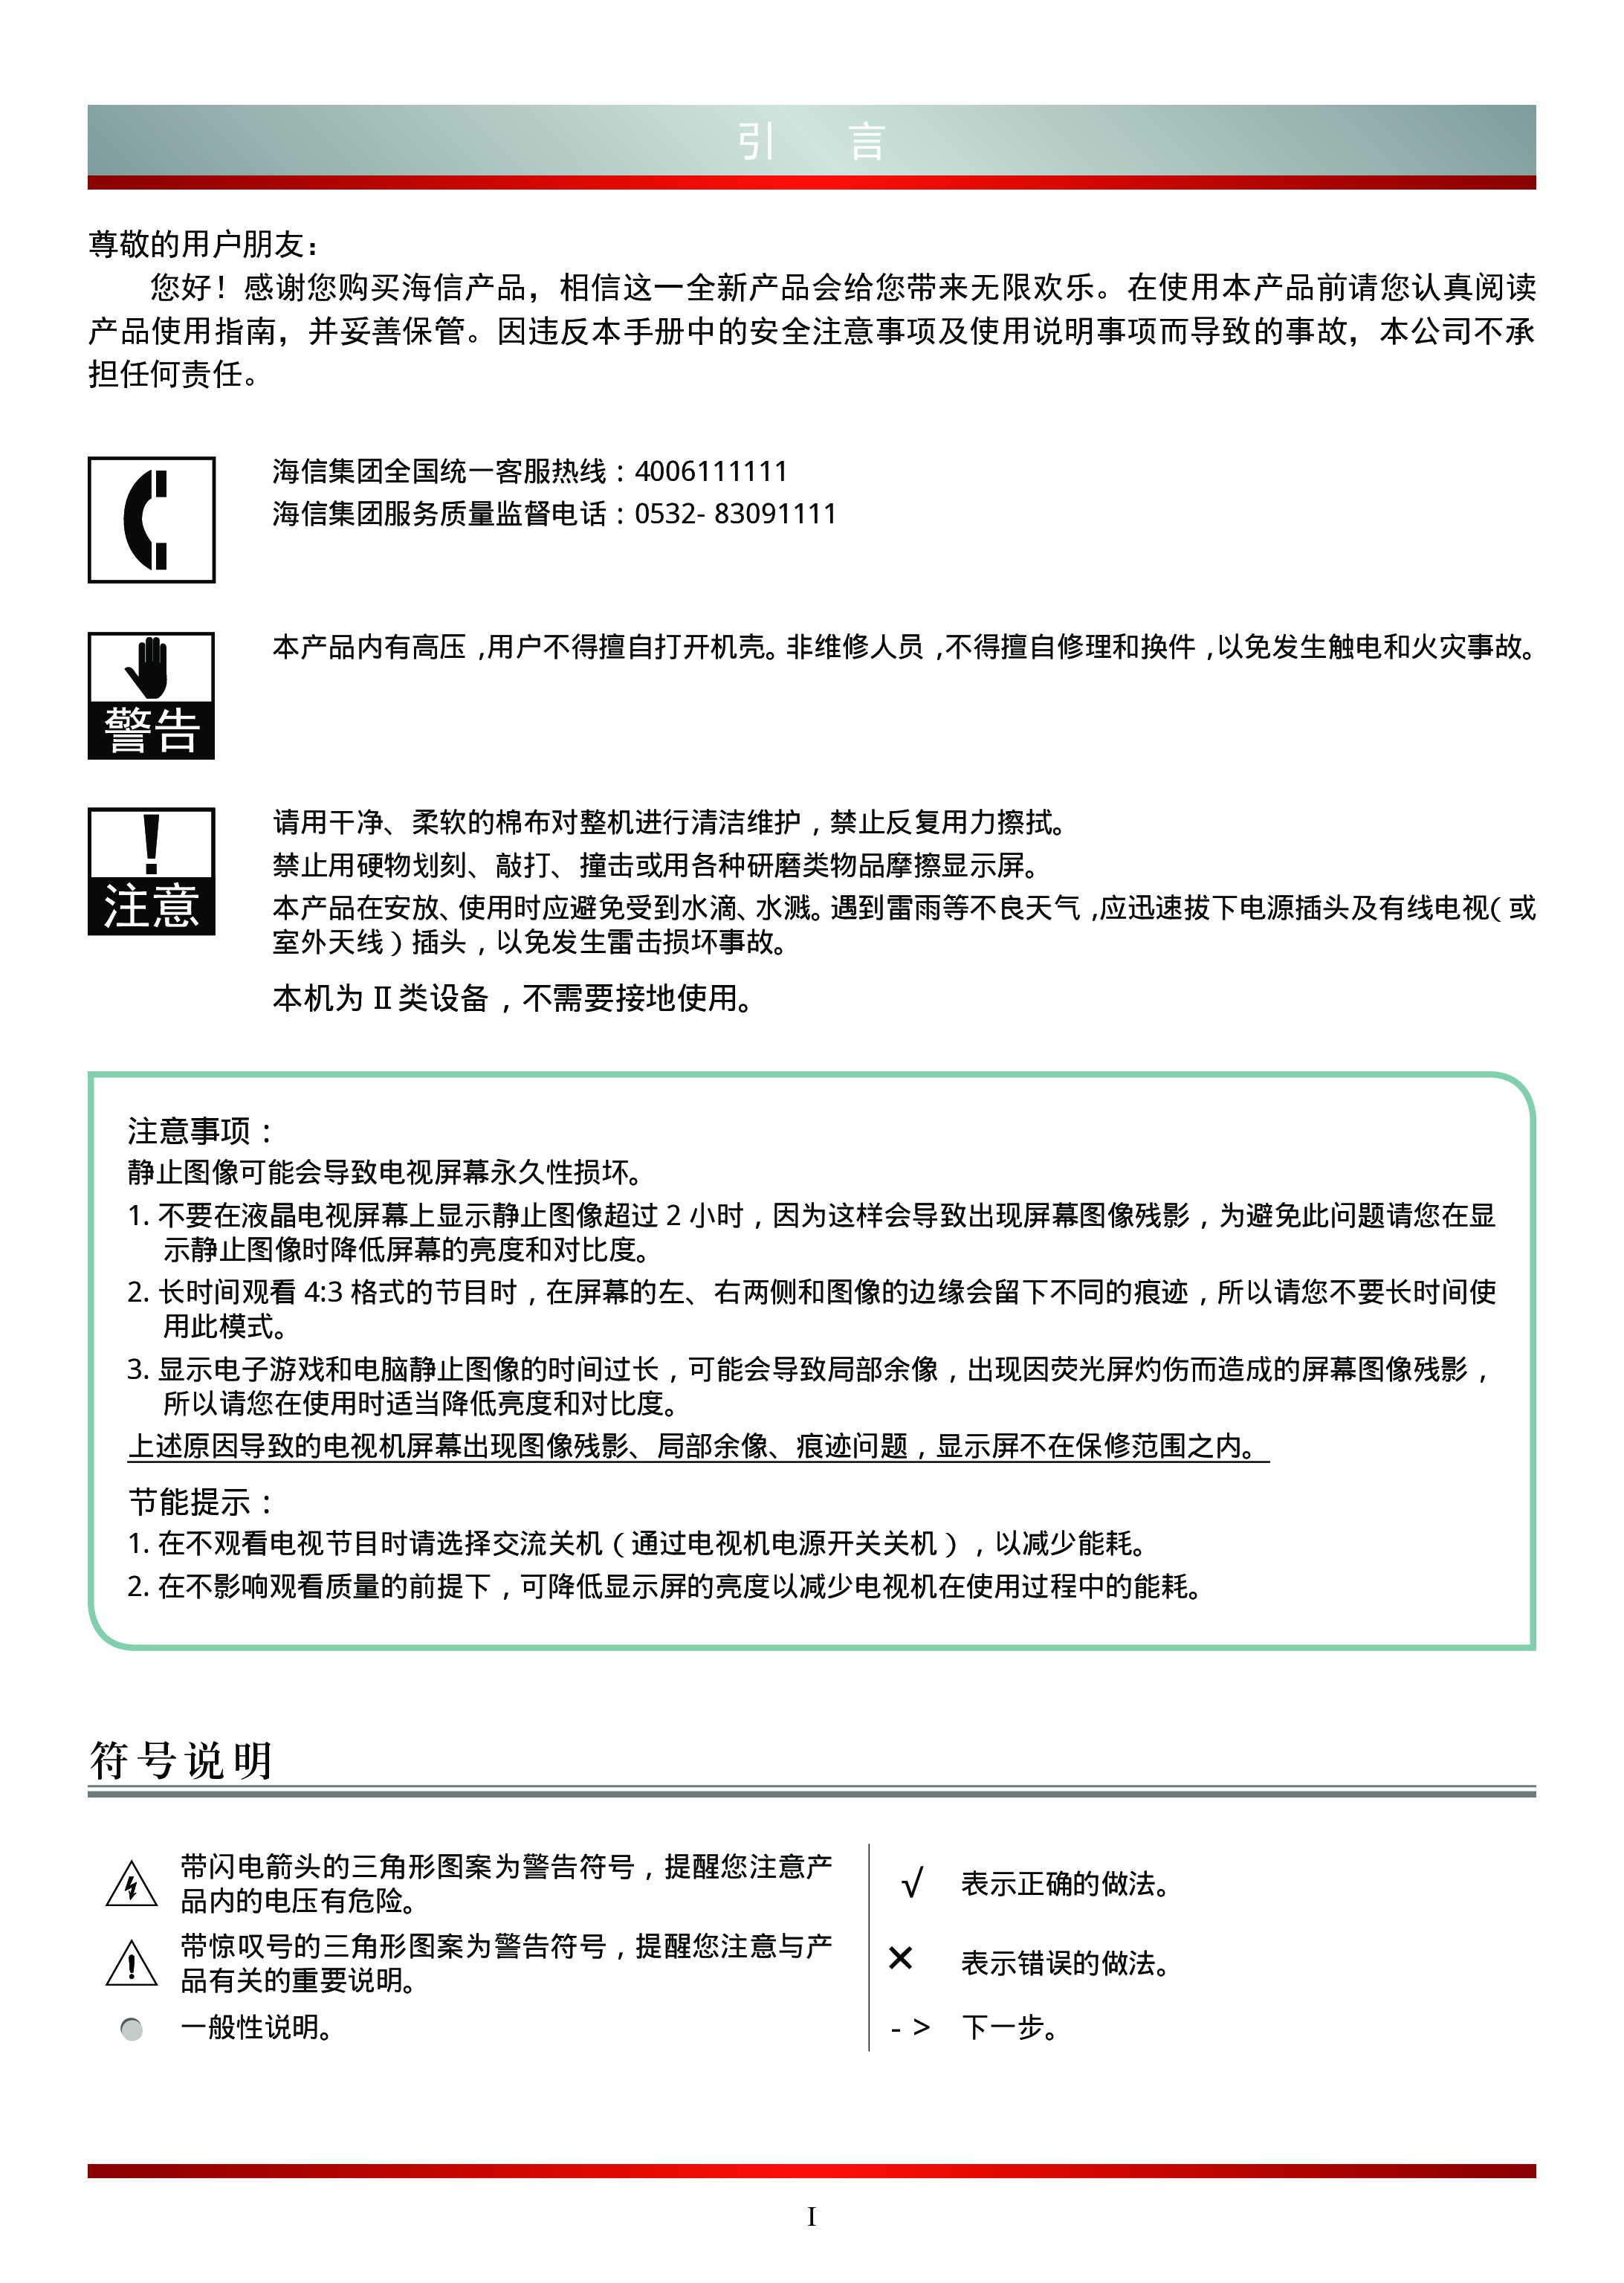 海信 Hisense LED50XT900X3DU 使用说明书 第1页